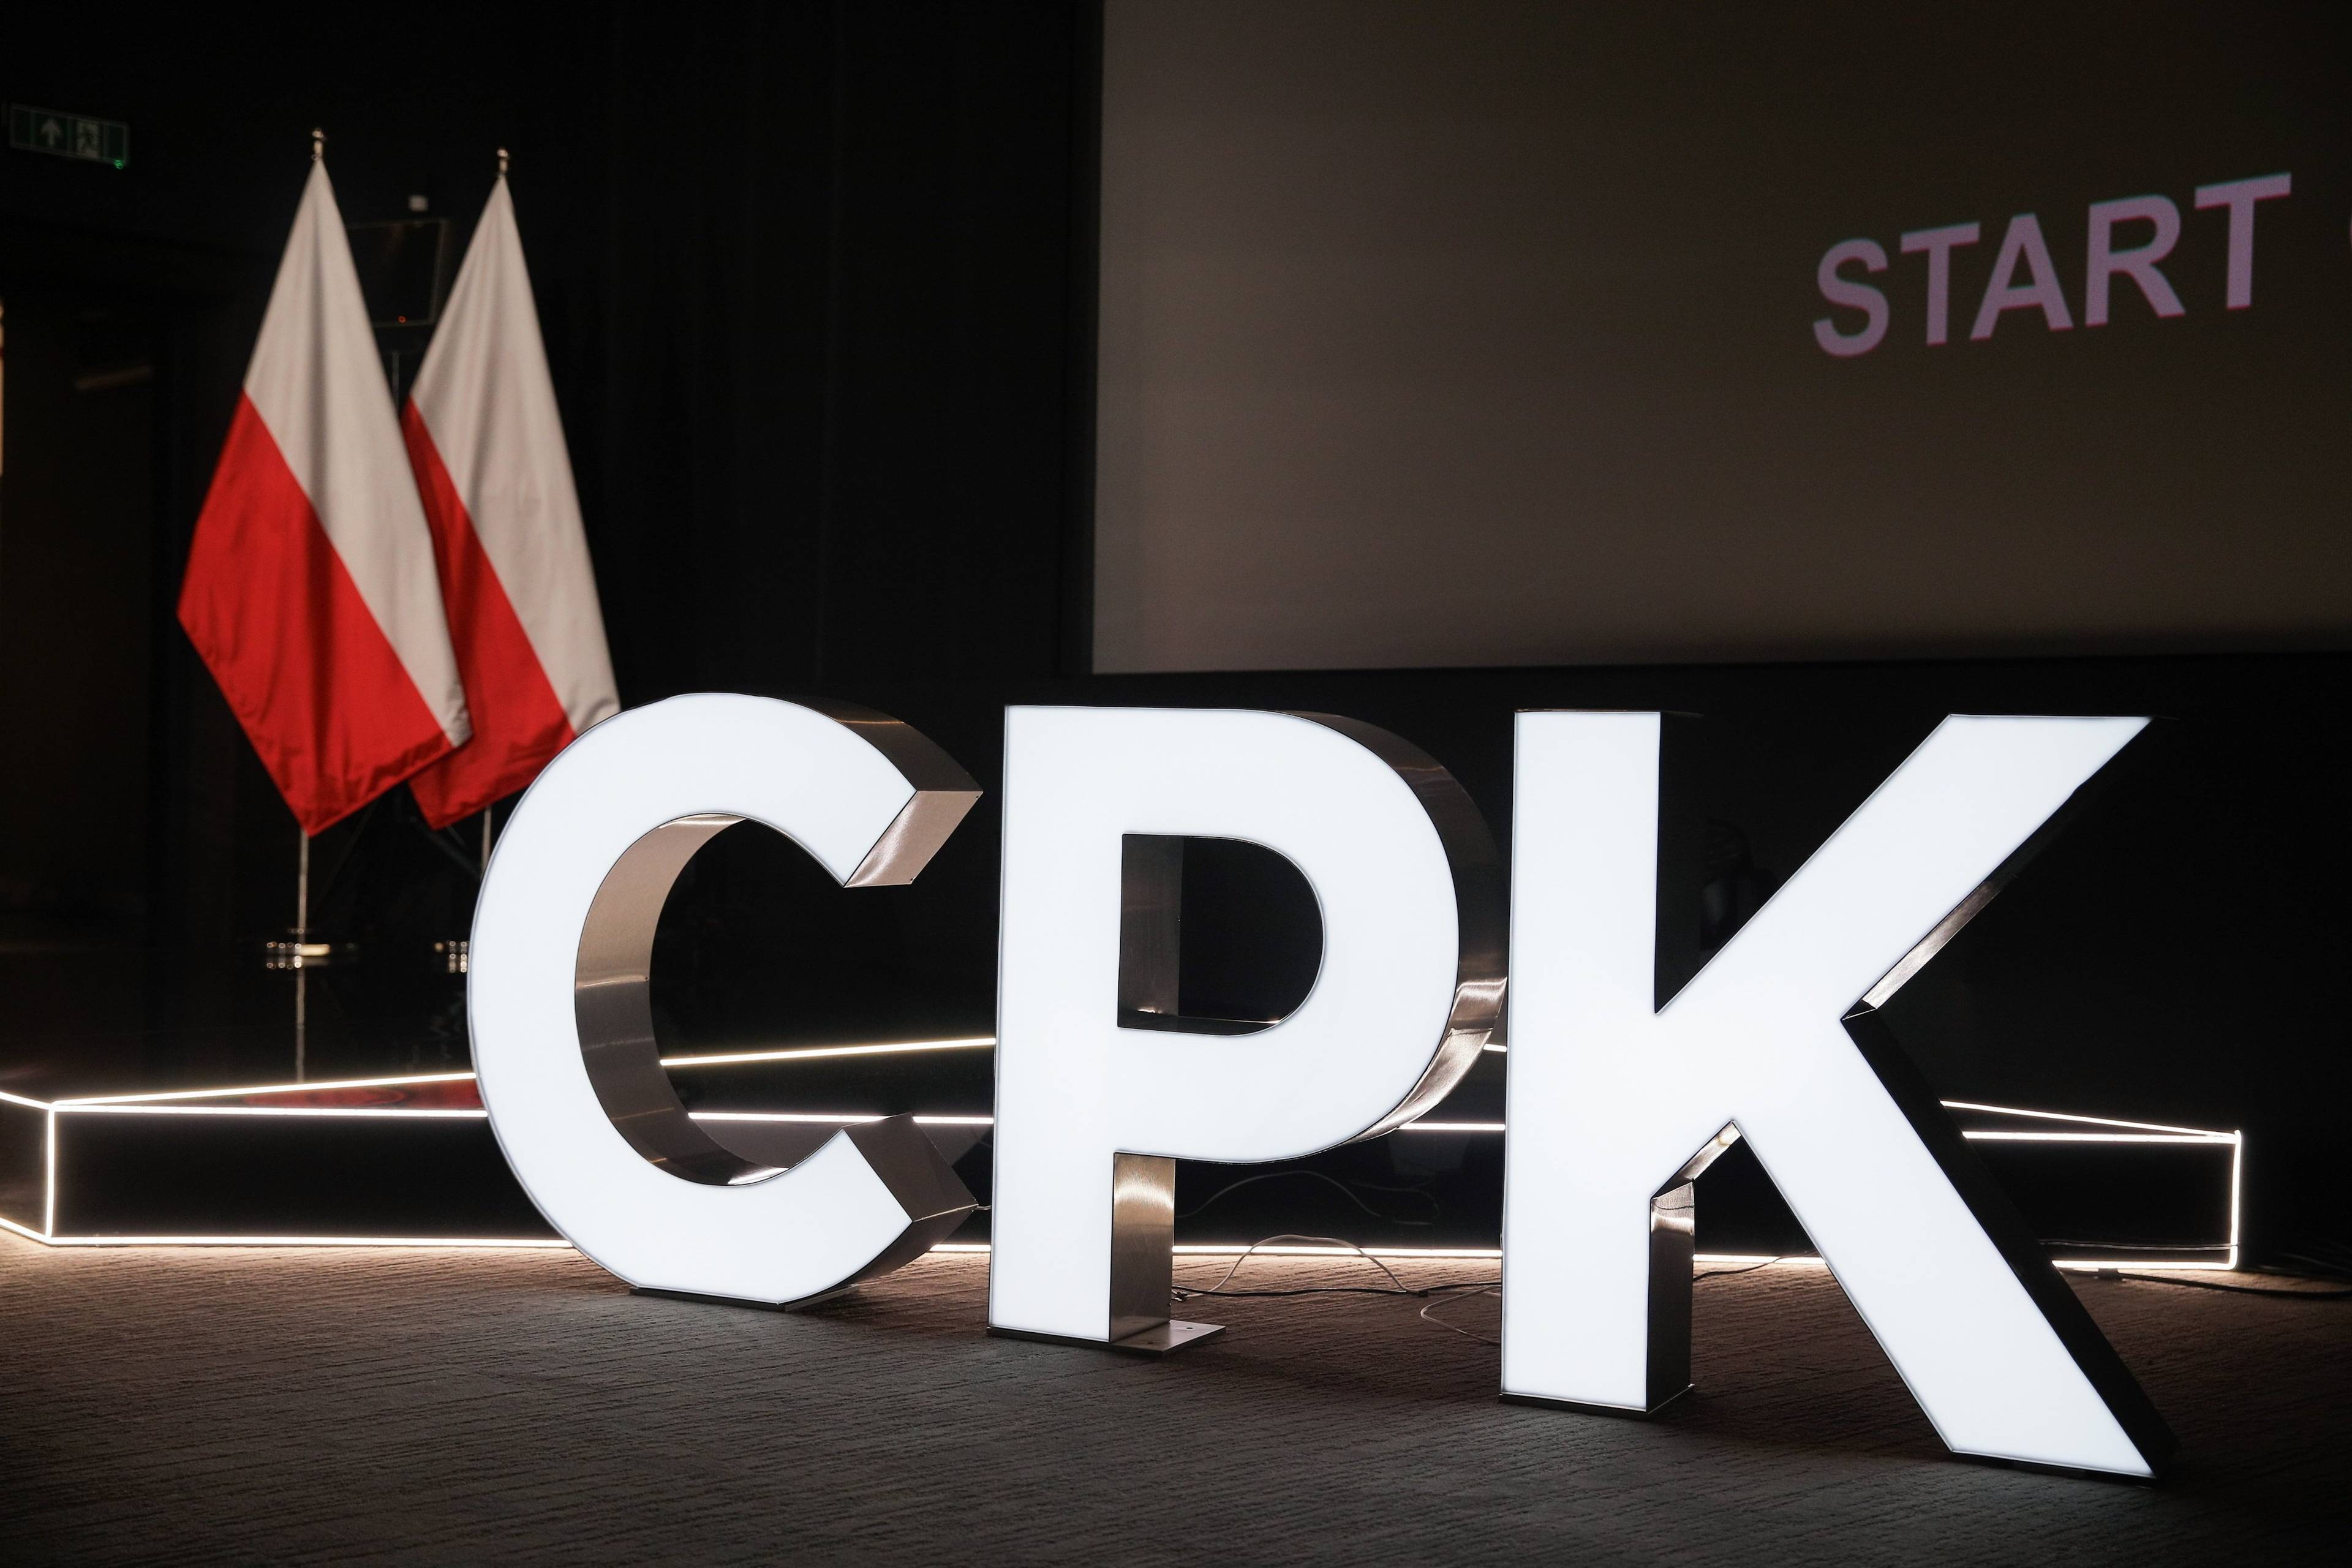 podświetlany napis "CPK" na tle polskich flag